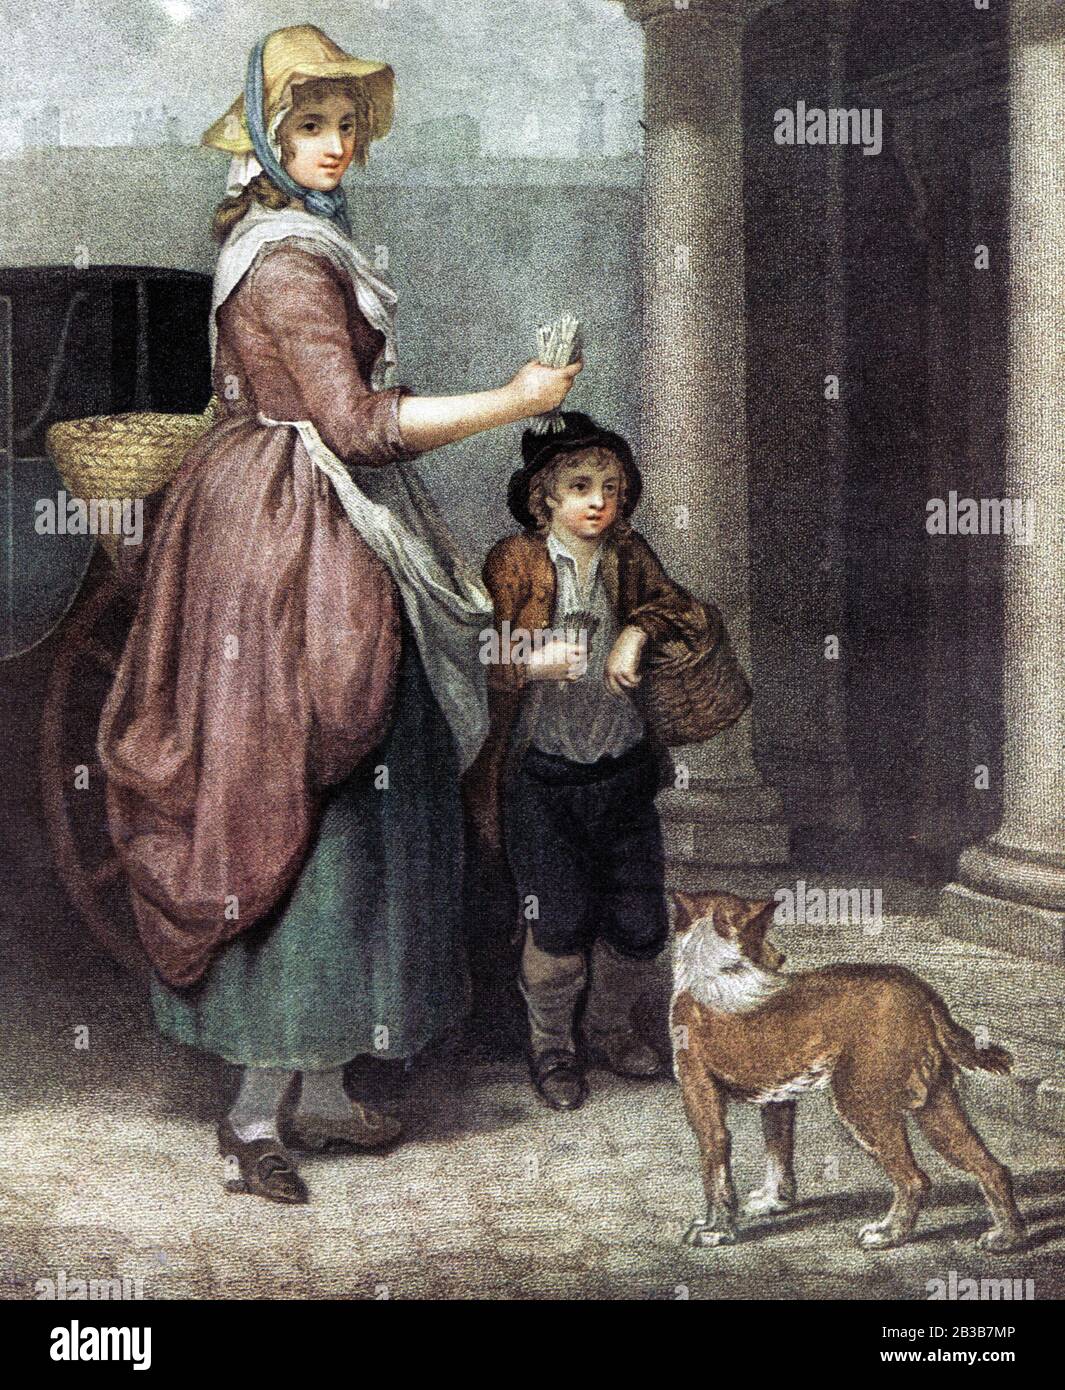 Match (luzifer) Verkäufer im Jahr 17993. Einer der vielen englischen Straßenhändler aus dem 18. Jahrhundert - EINE Mutter und ein Sohn, die Streichhölzer von Tür zu Tür Verkaufen, wurden als schwierig angesehen, an Hausbesitzer zu verkaufen, so dass Frauen und Kinder oft beschäftigt waren, da sie tendenziell mehr Sympathie von potenziellen Käufern bekamen. Matches wurden manchmal als "fuzees", deutsche "Binder" oder einfach "lights" bezeichnet und auch auf Messen, vom Stall, auf Bootslandungen und in Gasthäusern und Tavernen verkauft. Stockfoto